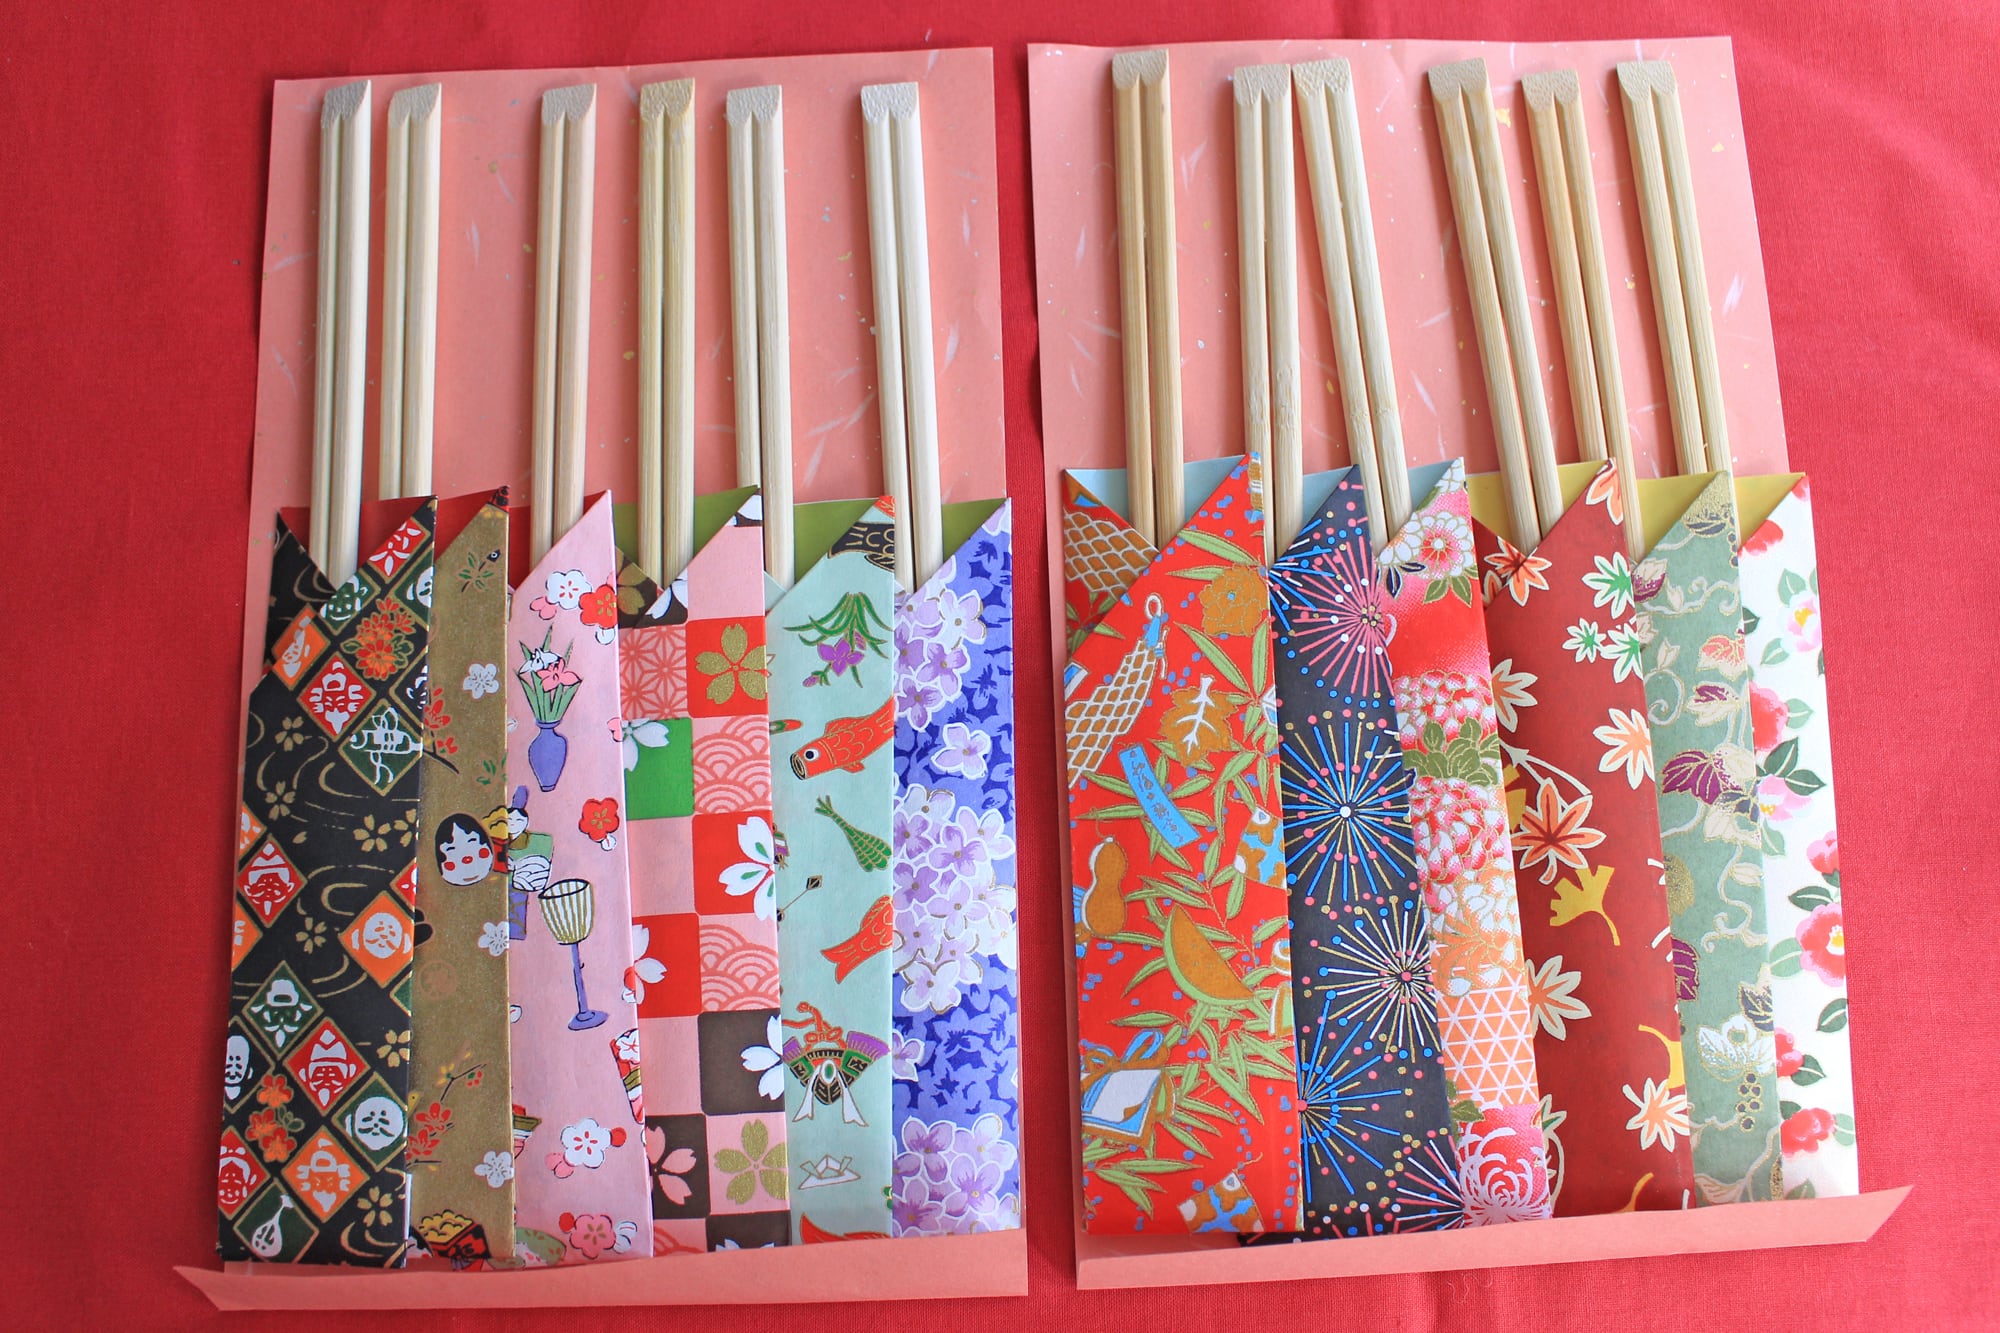 和紙友禅柄箸袋No.4 日本の風物詩シリーズ12本セット 折り紙箸袋 お箸の持ち方説明書付